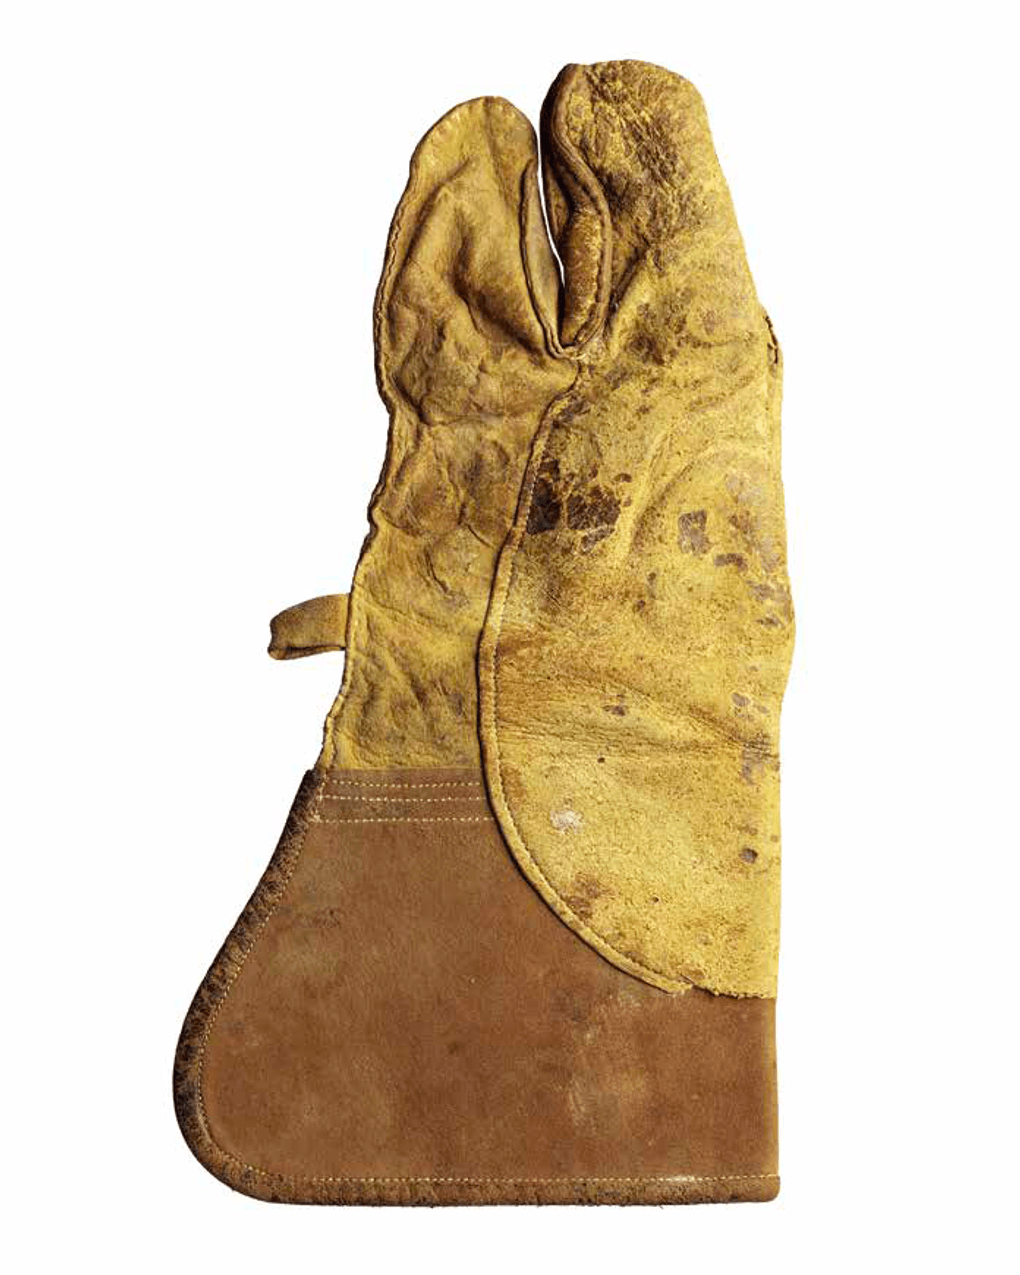 Перчатка для соколиной охоты. XIX век. Фотография предоставлена Музеем шейха Фейсала, Катар